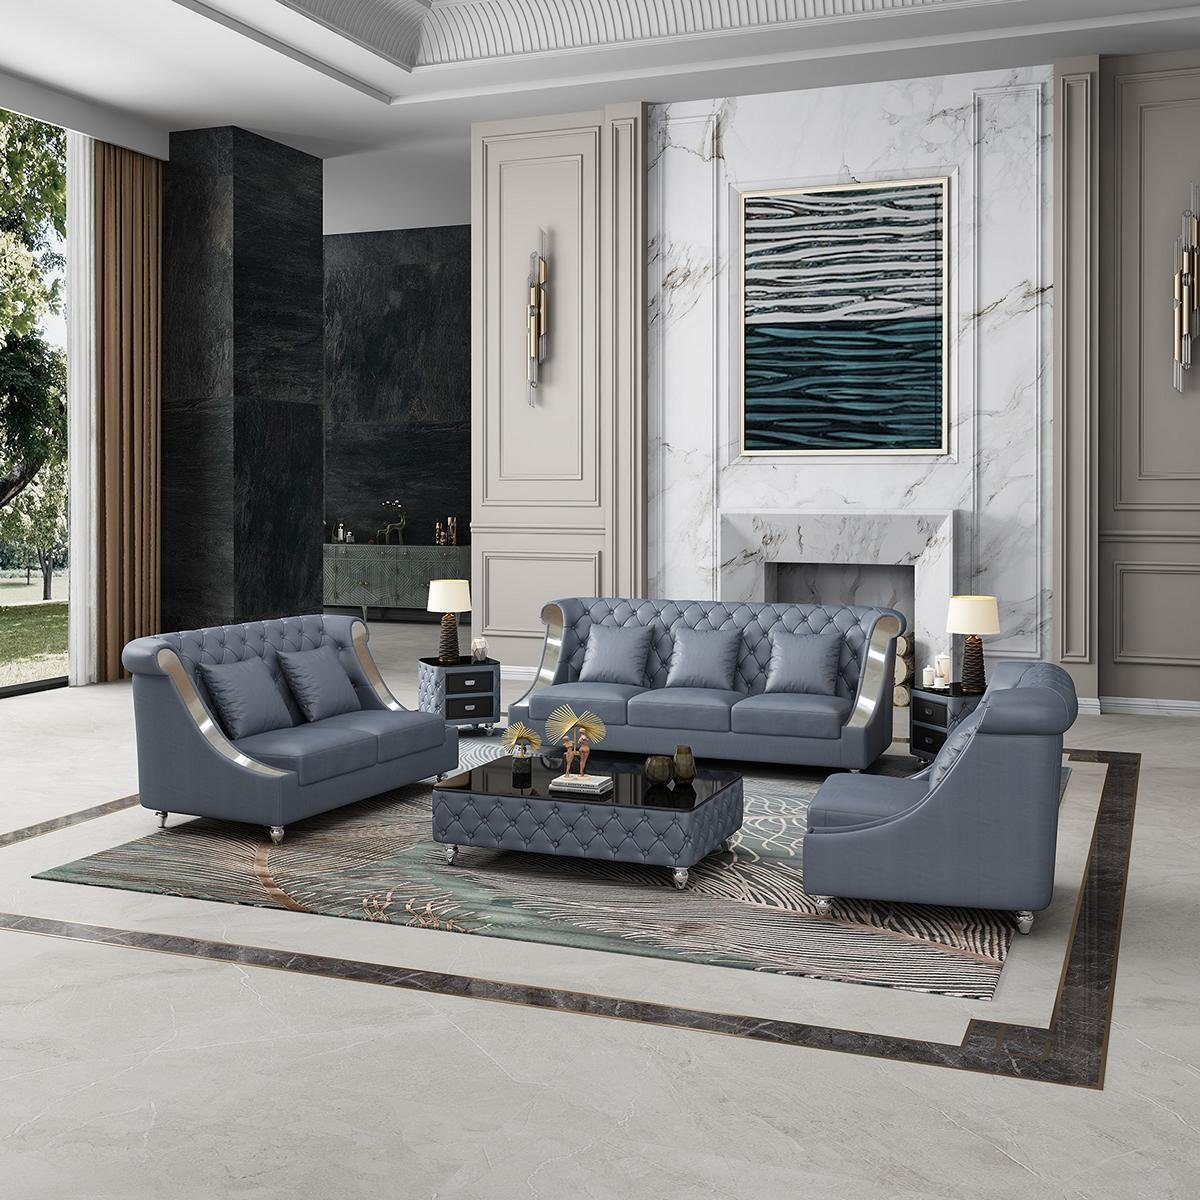 JVmoebel Wohnzimmer-Set, Sofagarnitur 3 2 1 Sitzer Set Design Sofa Polster Couchen Couch Modern Blau